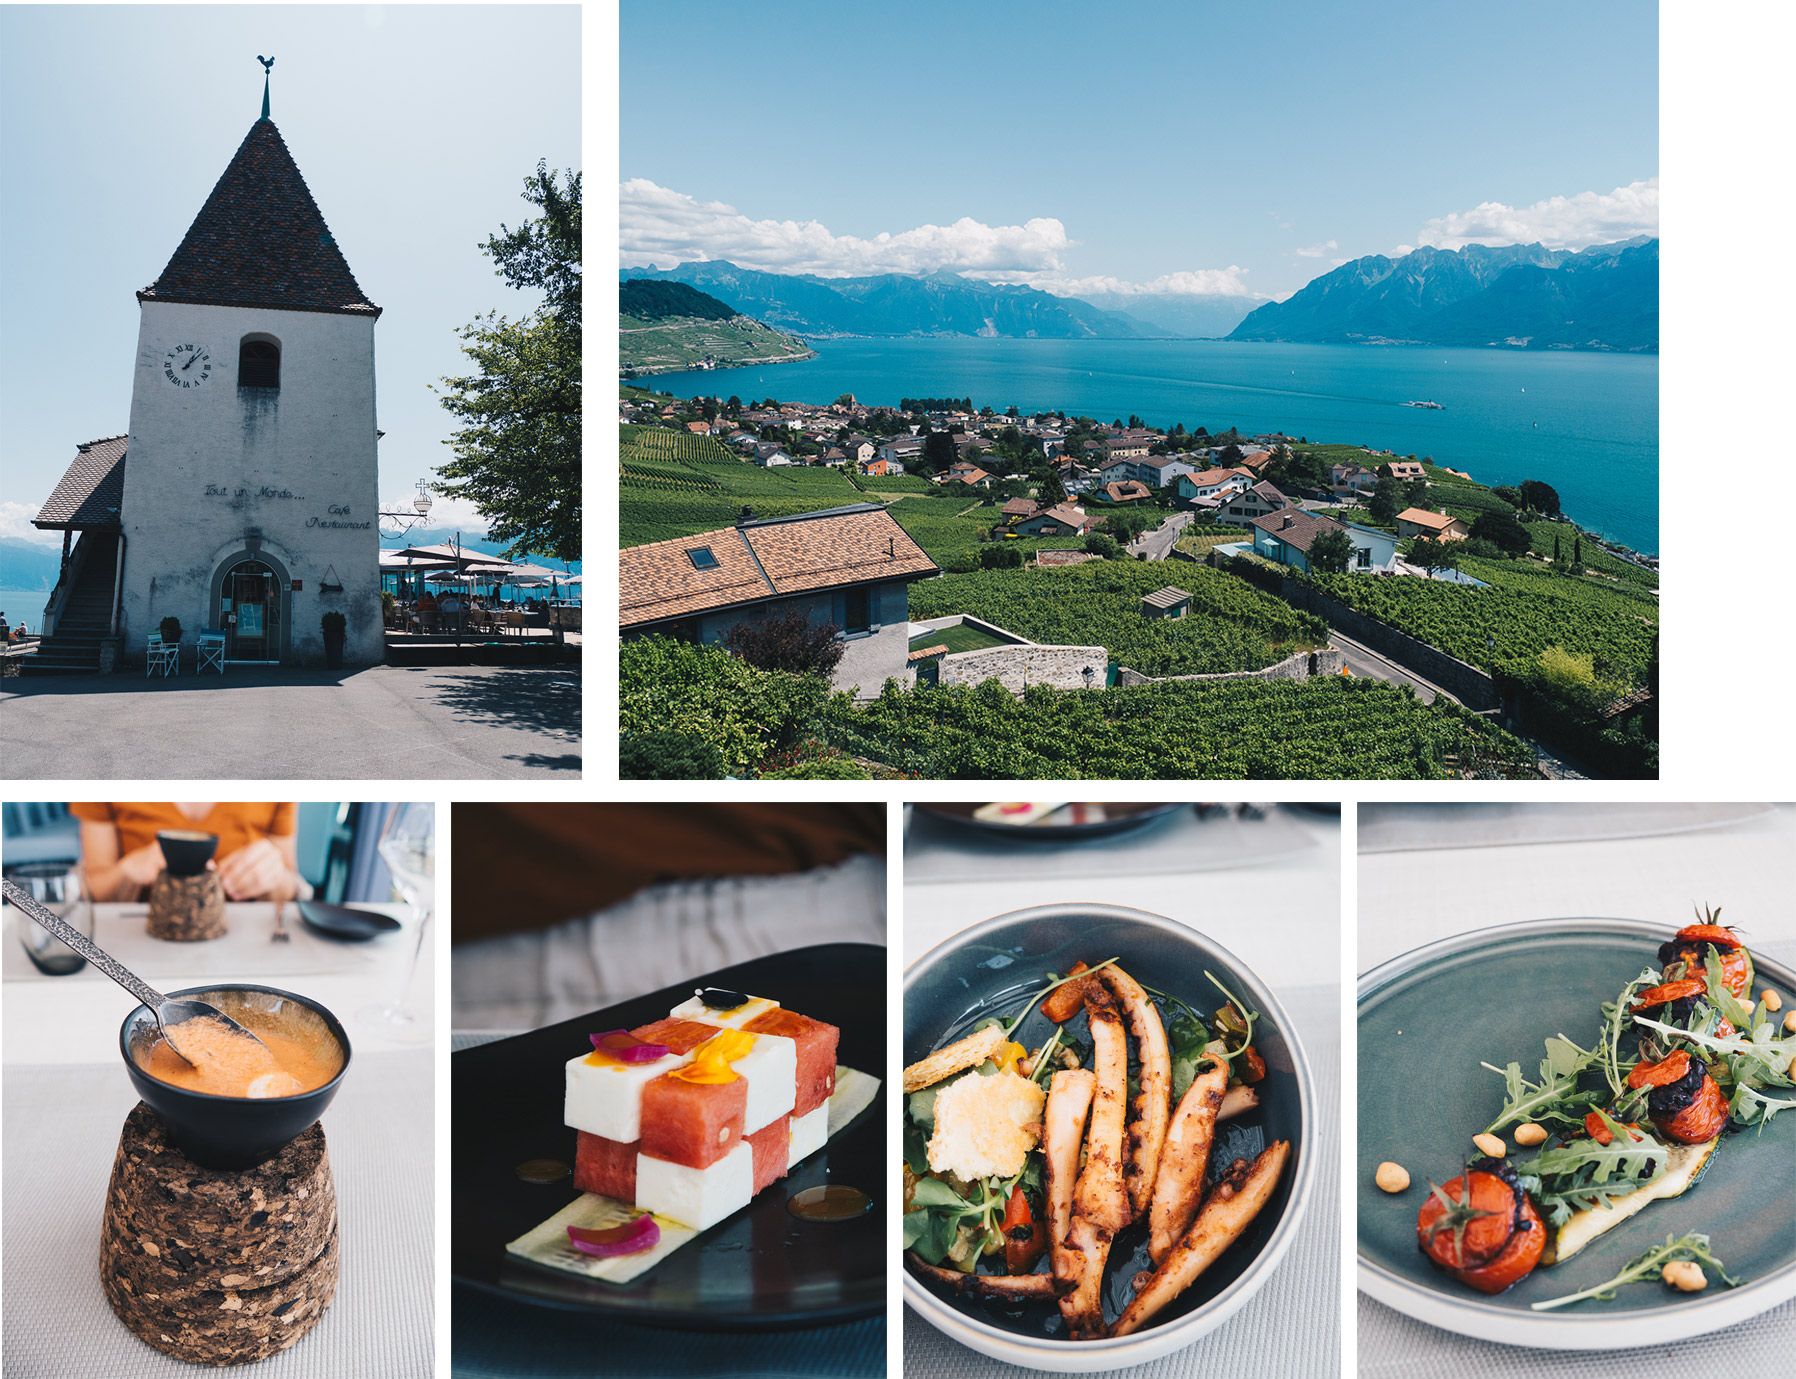 Suisse | Lausanne | Vignoble de lavaux | Mademoiselle-voyage | conseils